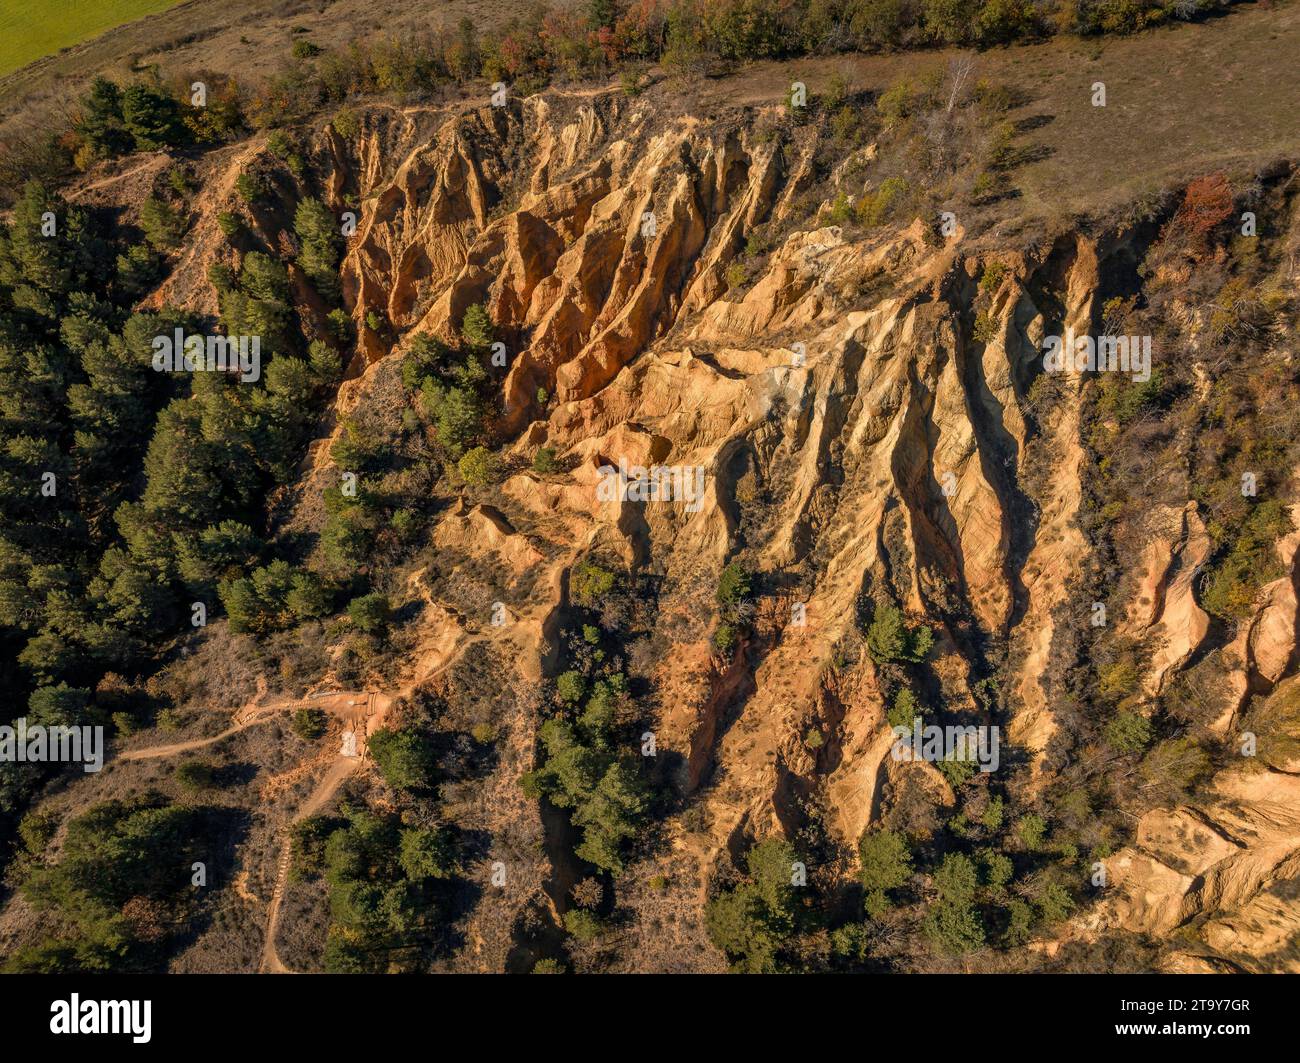 Luftaufnahme der Esterregalls d'all, einer geologischen Formation von Badlands, die durch Erosion verursacht wurden (Cerdanya, Katalonien, Spanien, Pyrenäen) Stockfoto